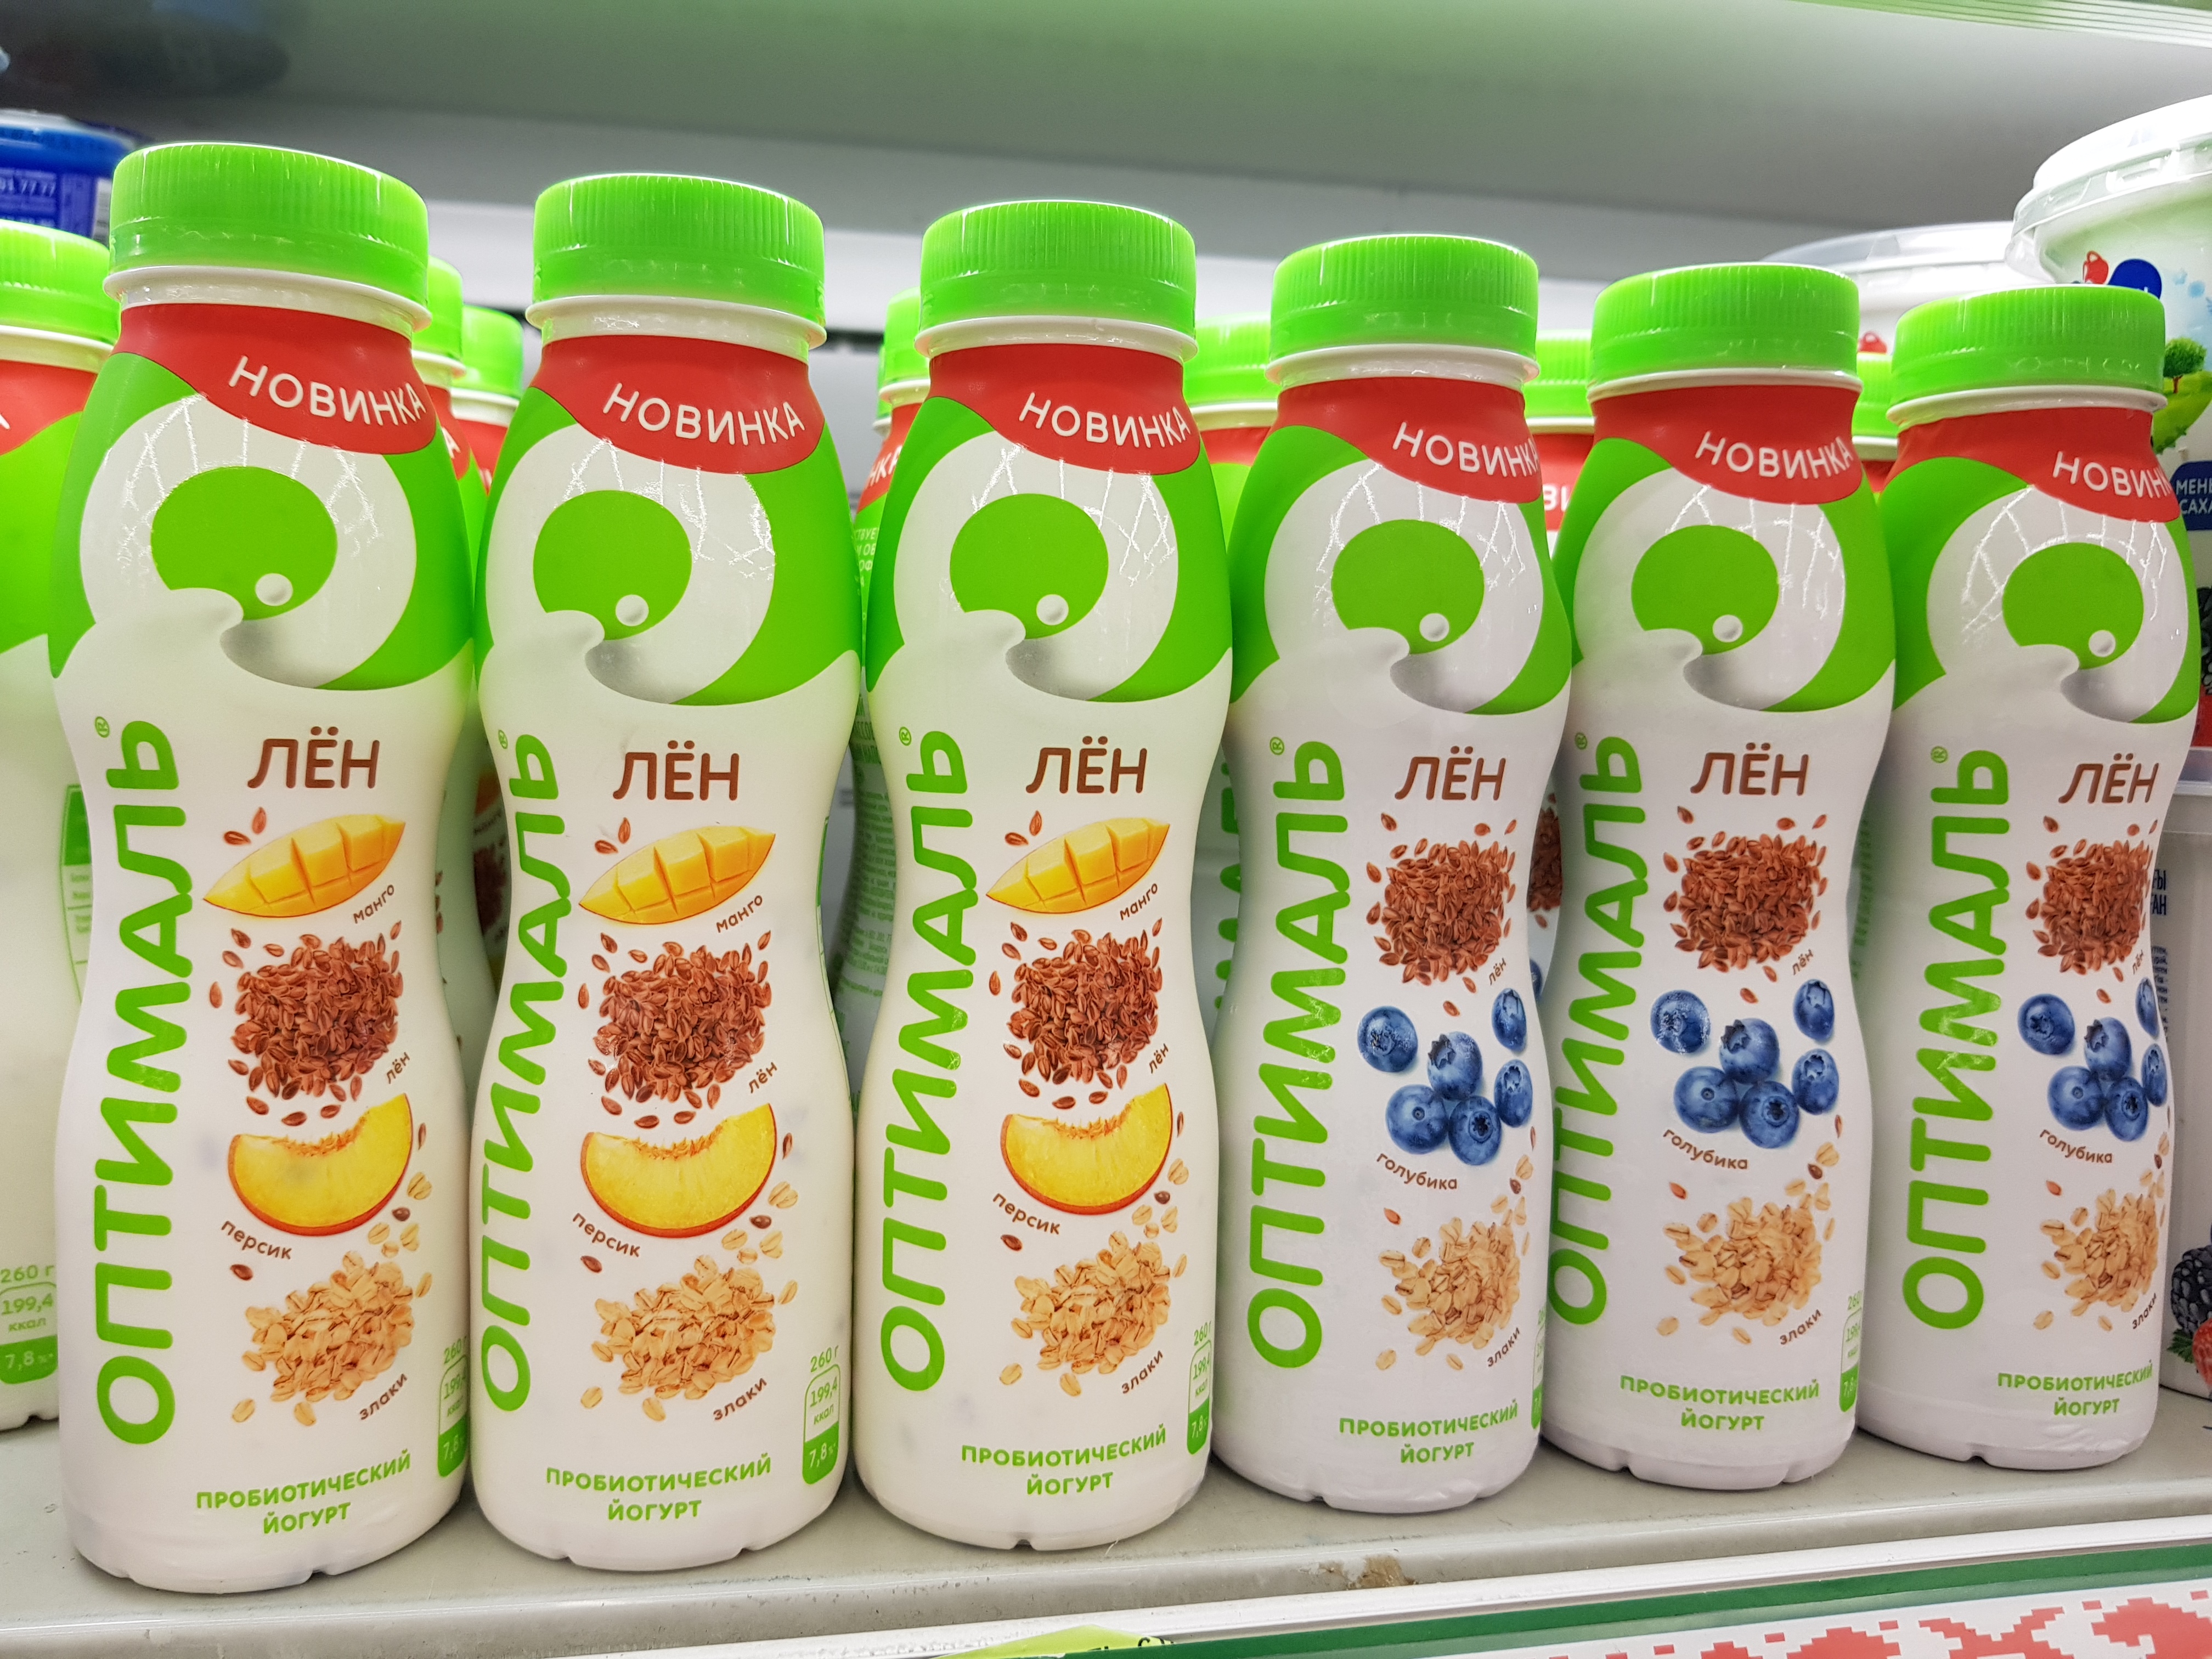 Белорусские йогурты фото и названия